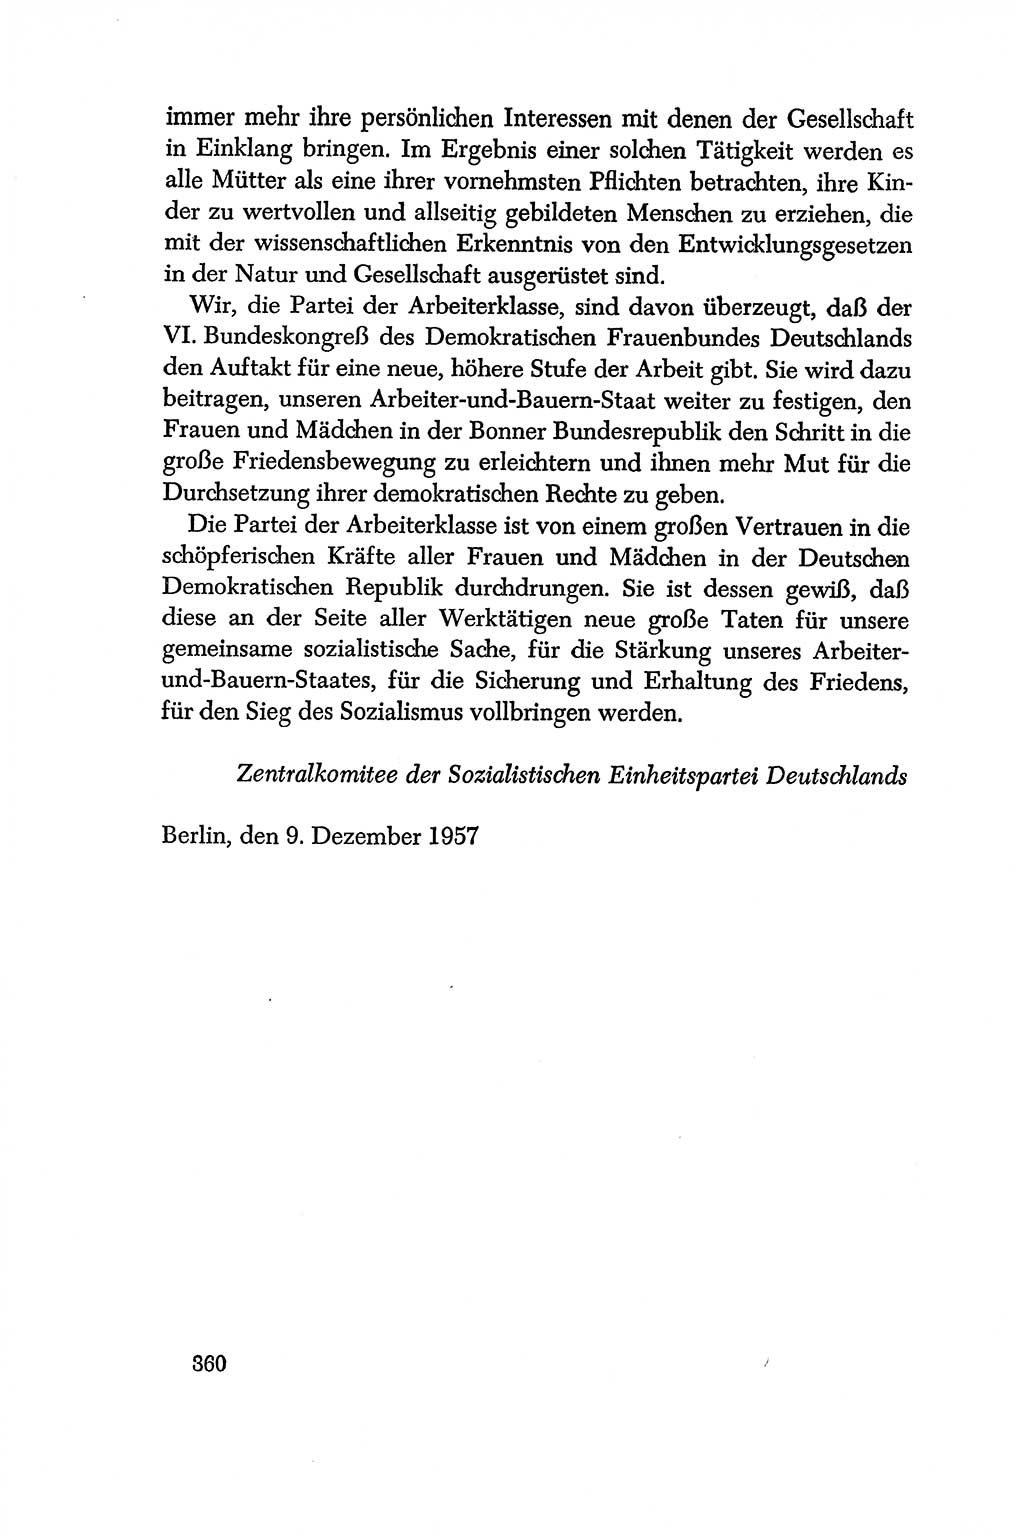 Dokumente der Sozialistischen Einheitspartei Deutschlands (SED) [Deutsche Demokratische Republik (DDR)] 1956-1957, Seite 360 (Dok. SED DDR 1956-1957, S. 360)